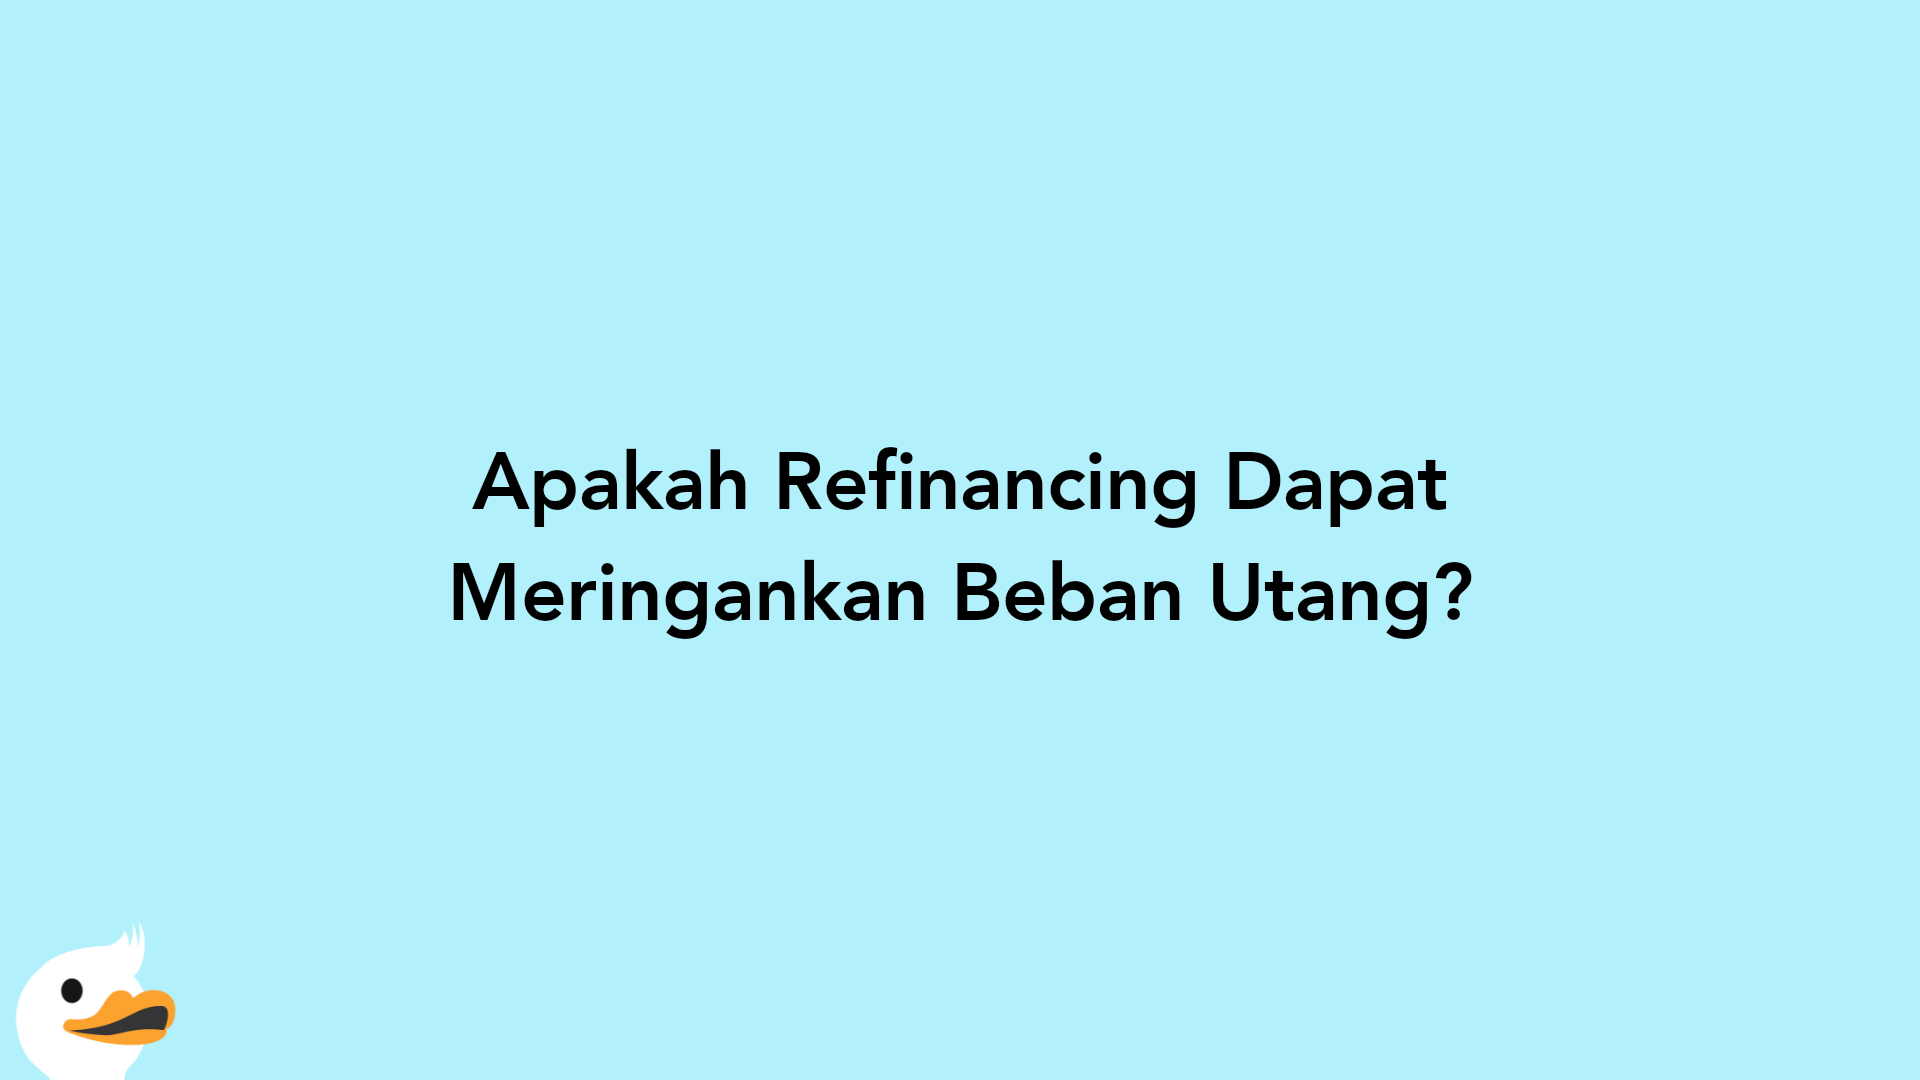 Apakah Refinancing Dapat Meringankan Beban Utang?